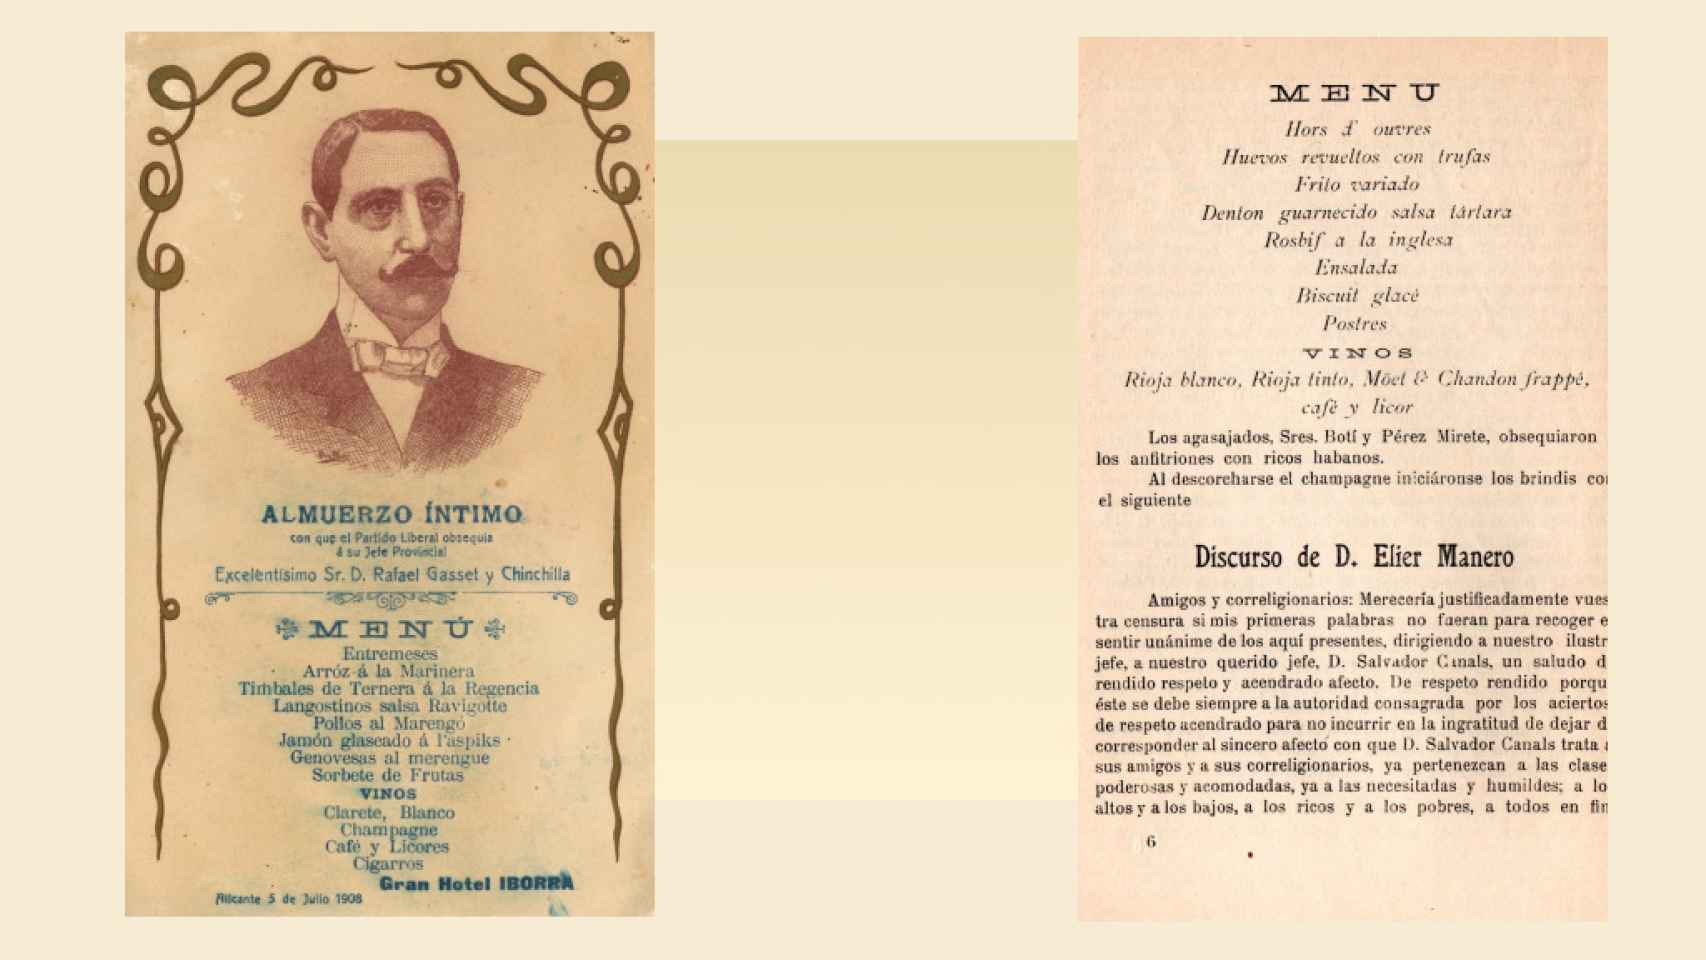 Los menús de 1908 y 1915 de ambos festines políticos en Alicante.